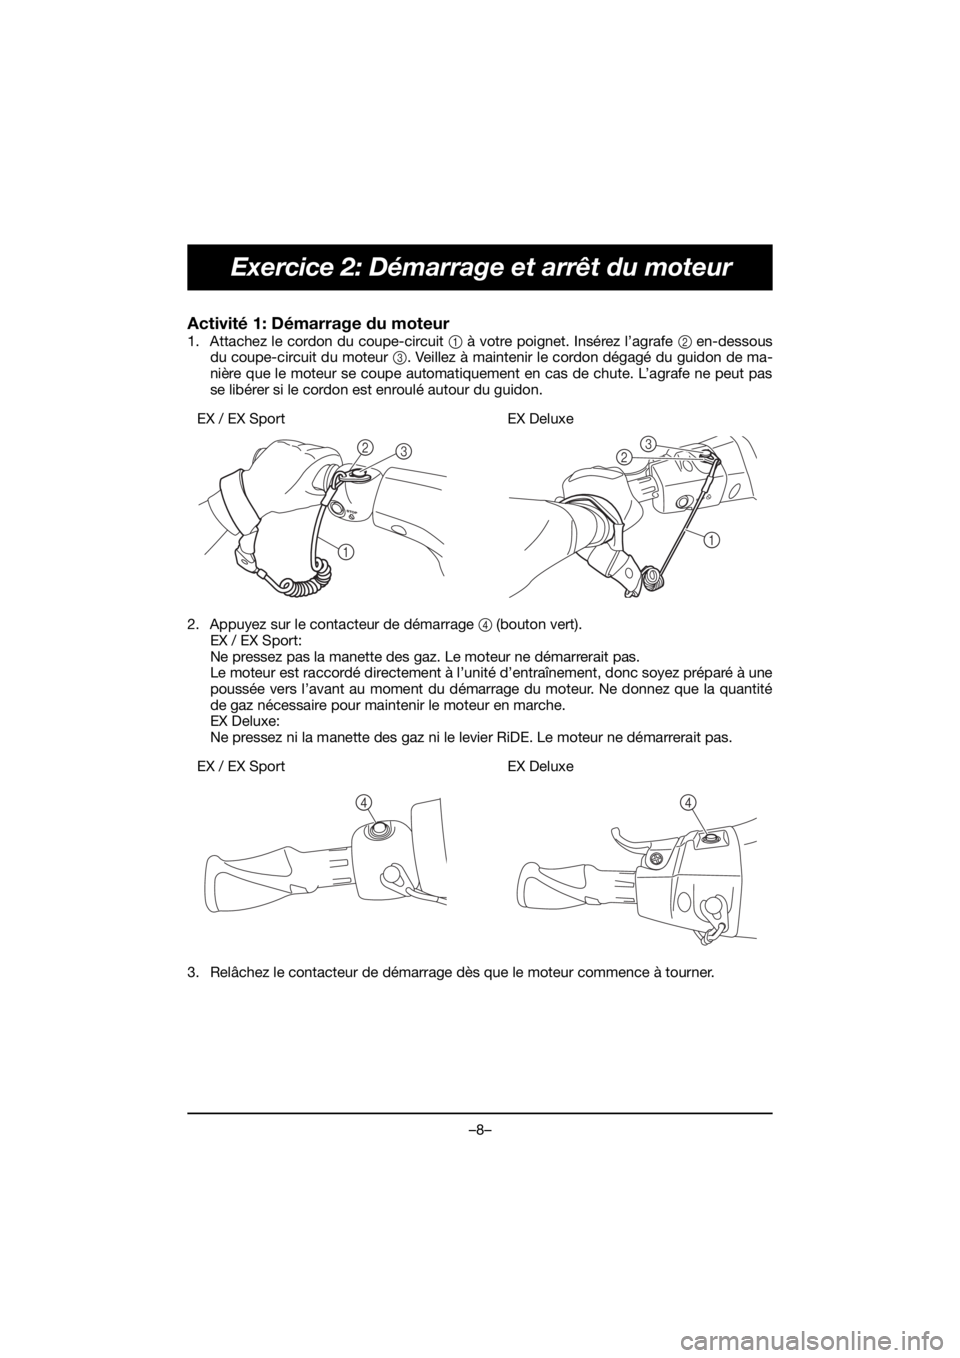 YAMAHA EX SPORT 2019  Manuale de Empleo (in Spanish) –8–
Exercice 2: Démarrage et arrêt du moteur
Activité 1: Démarrage du moteur 
1. Attachez le cordon du coupe-circuit 1 à votre poignet. Insérez l’agrafe 2 en-dessous
du coupe-circuit du mo